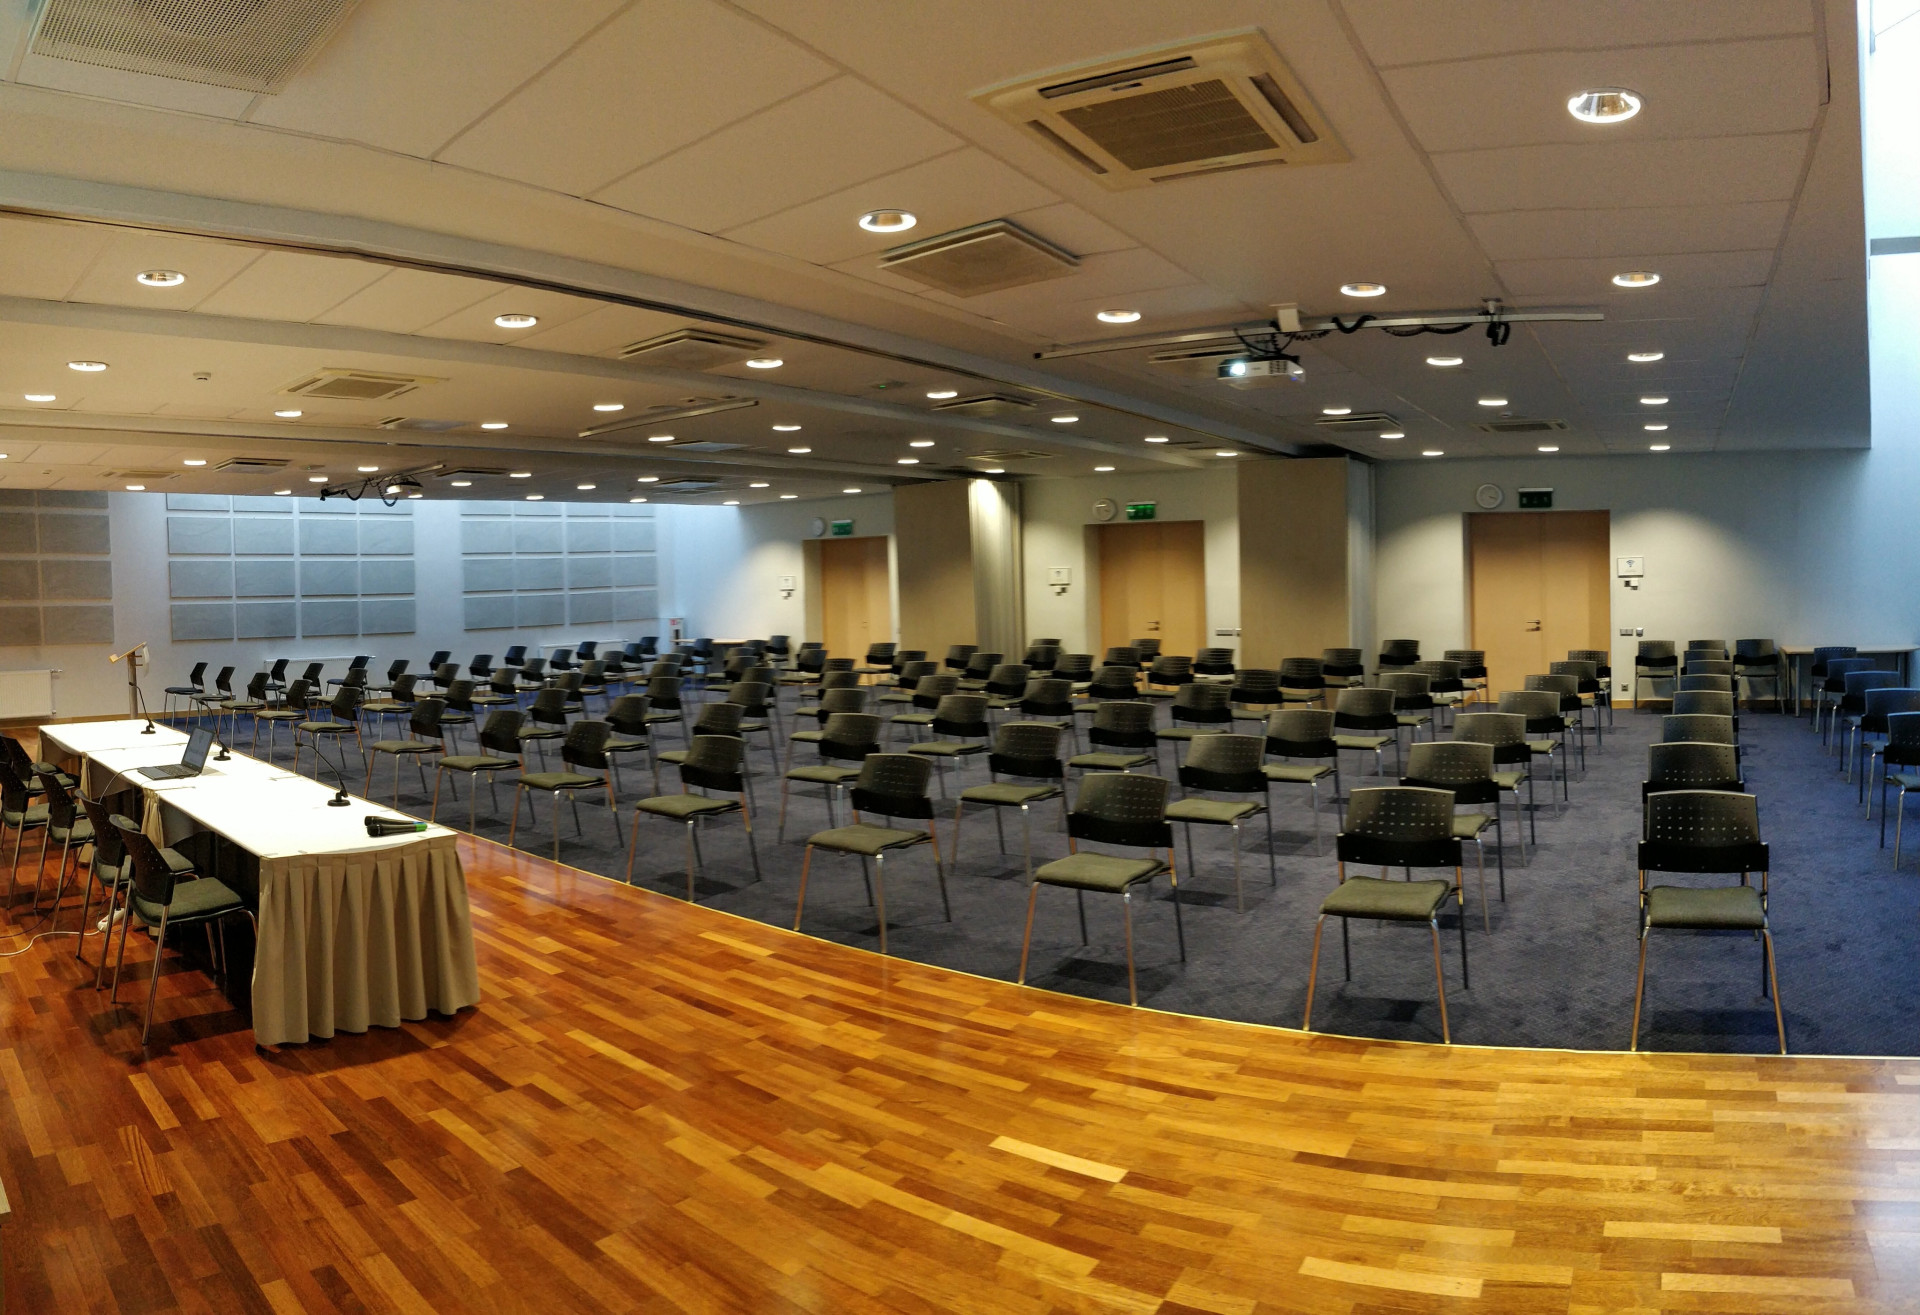 Залы для переговоров | Рига | Riga Islande Hotel | Фотографий